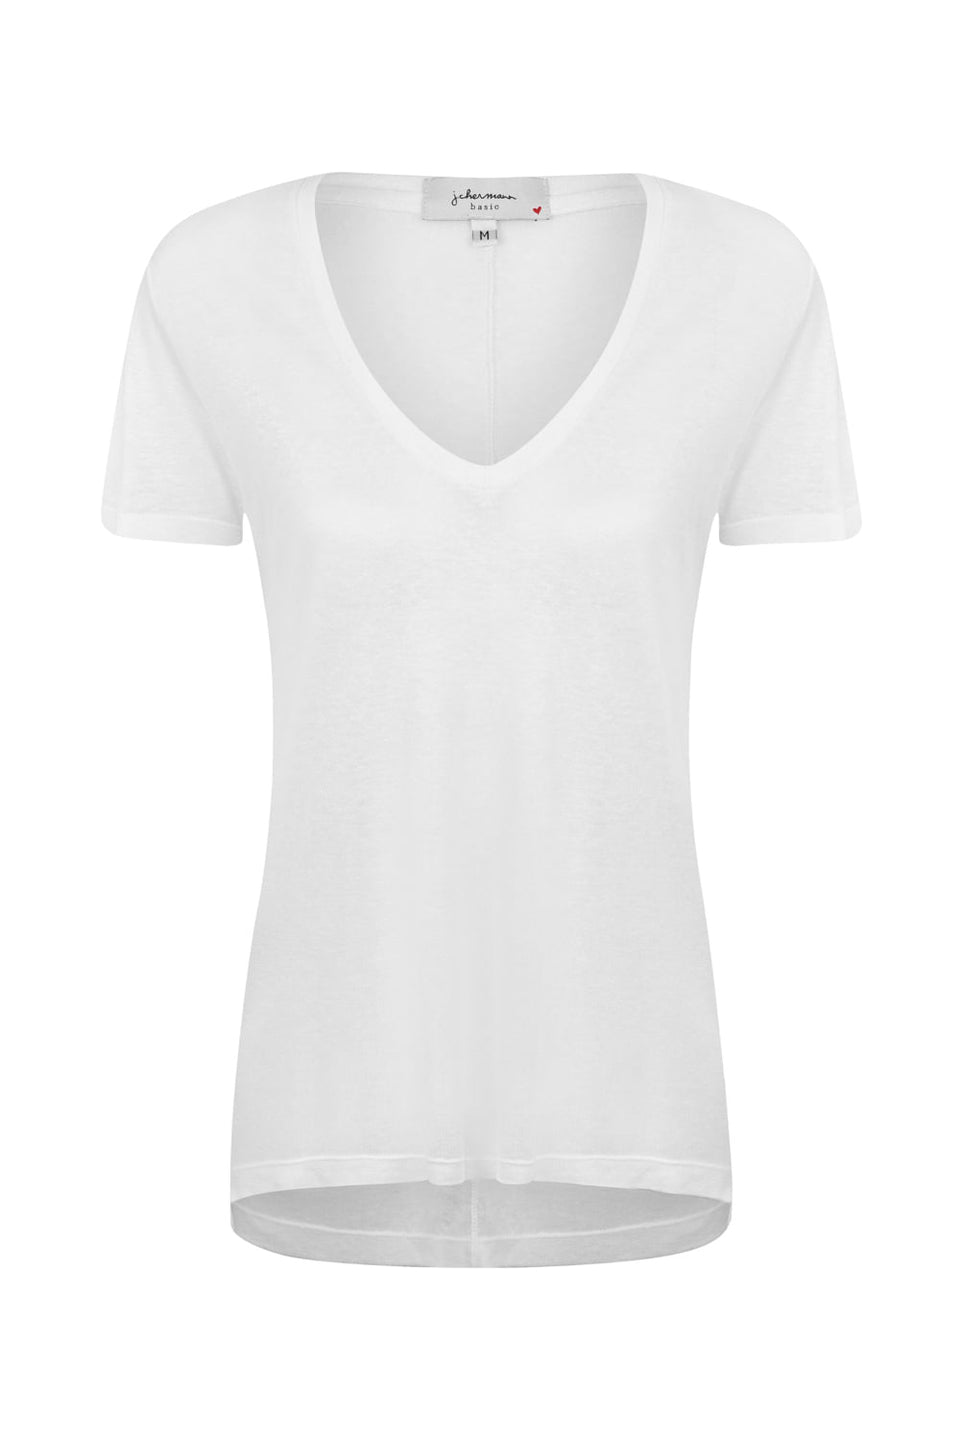 Camiseta Mullet Classic Branco